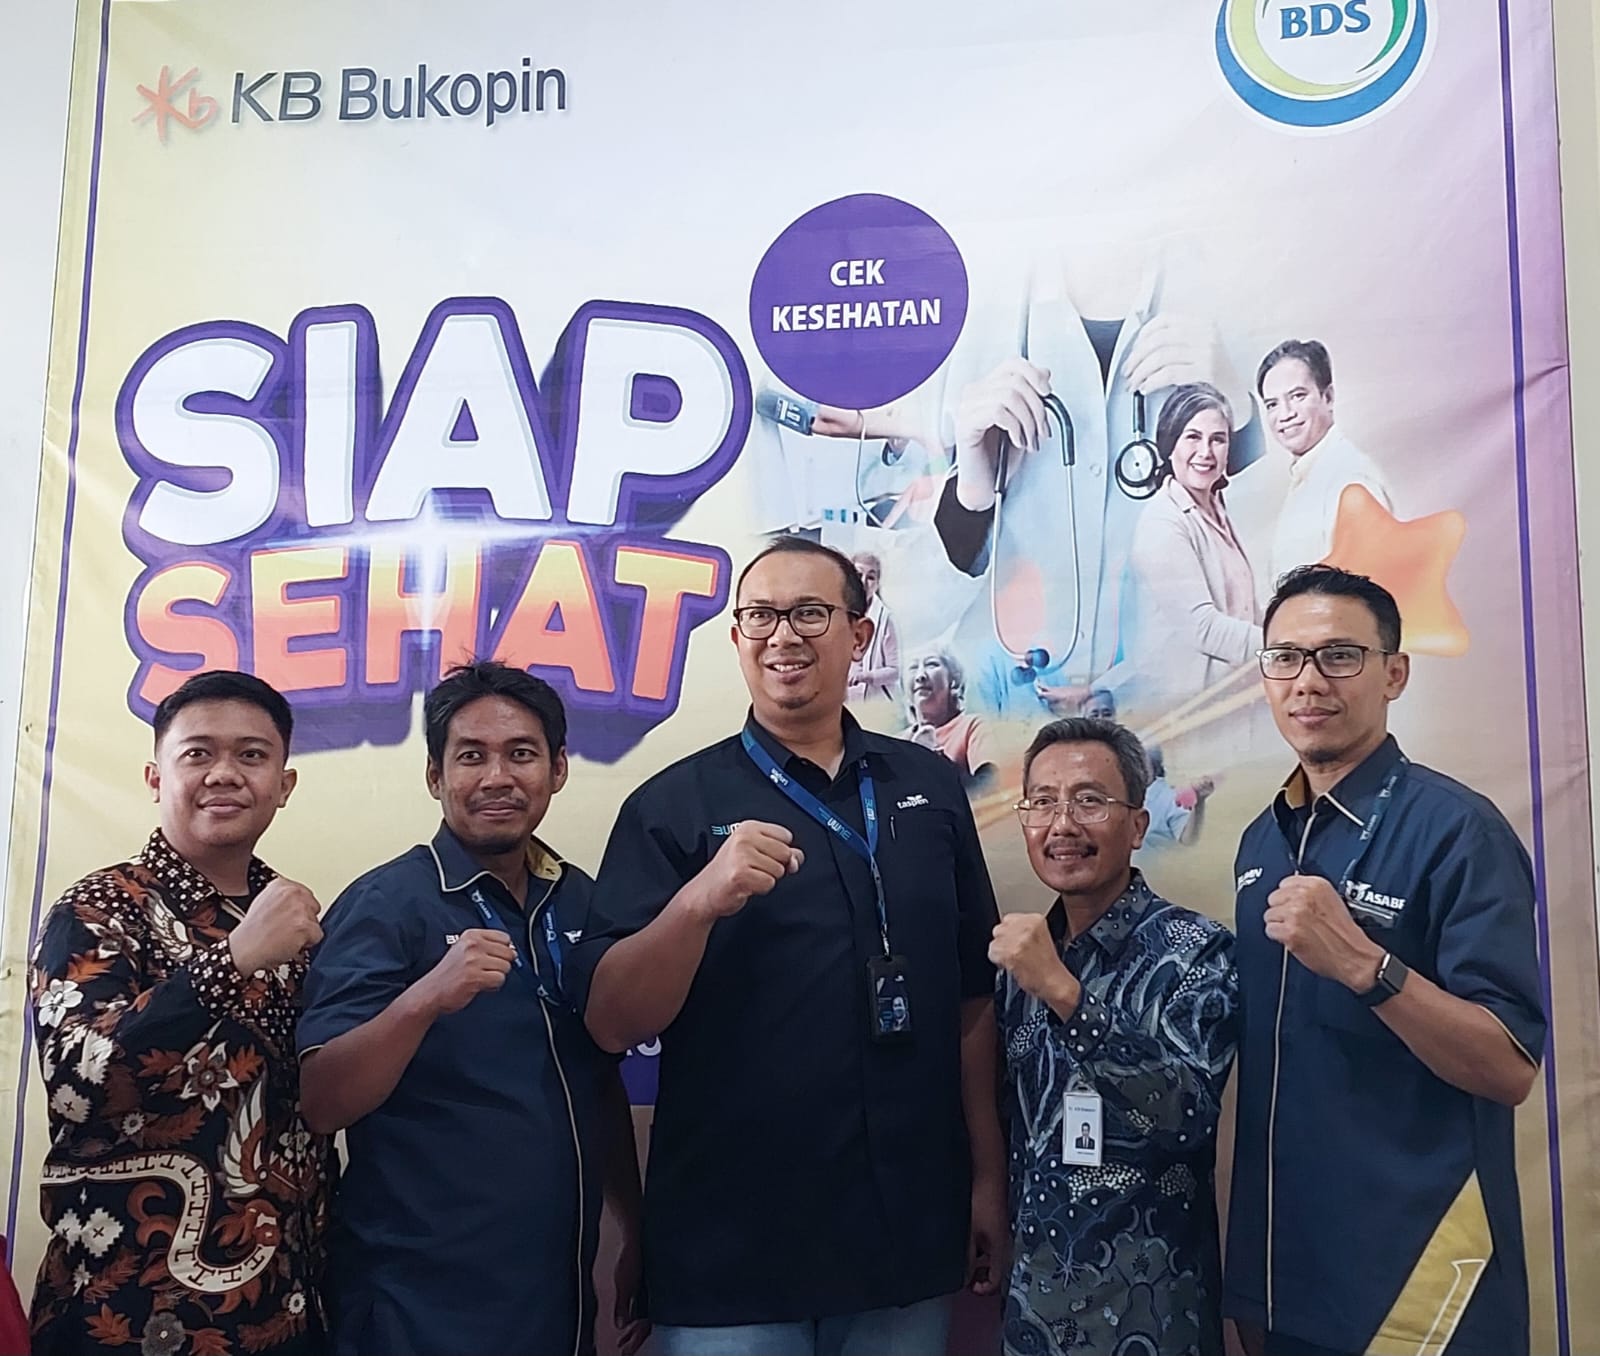 Siap Sehat bersama KB Bukopin Cirebon dan BDS